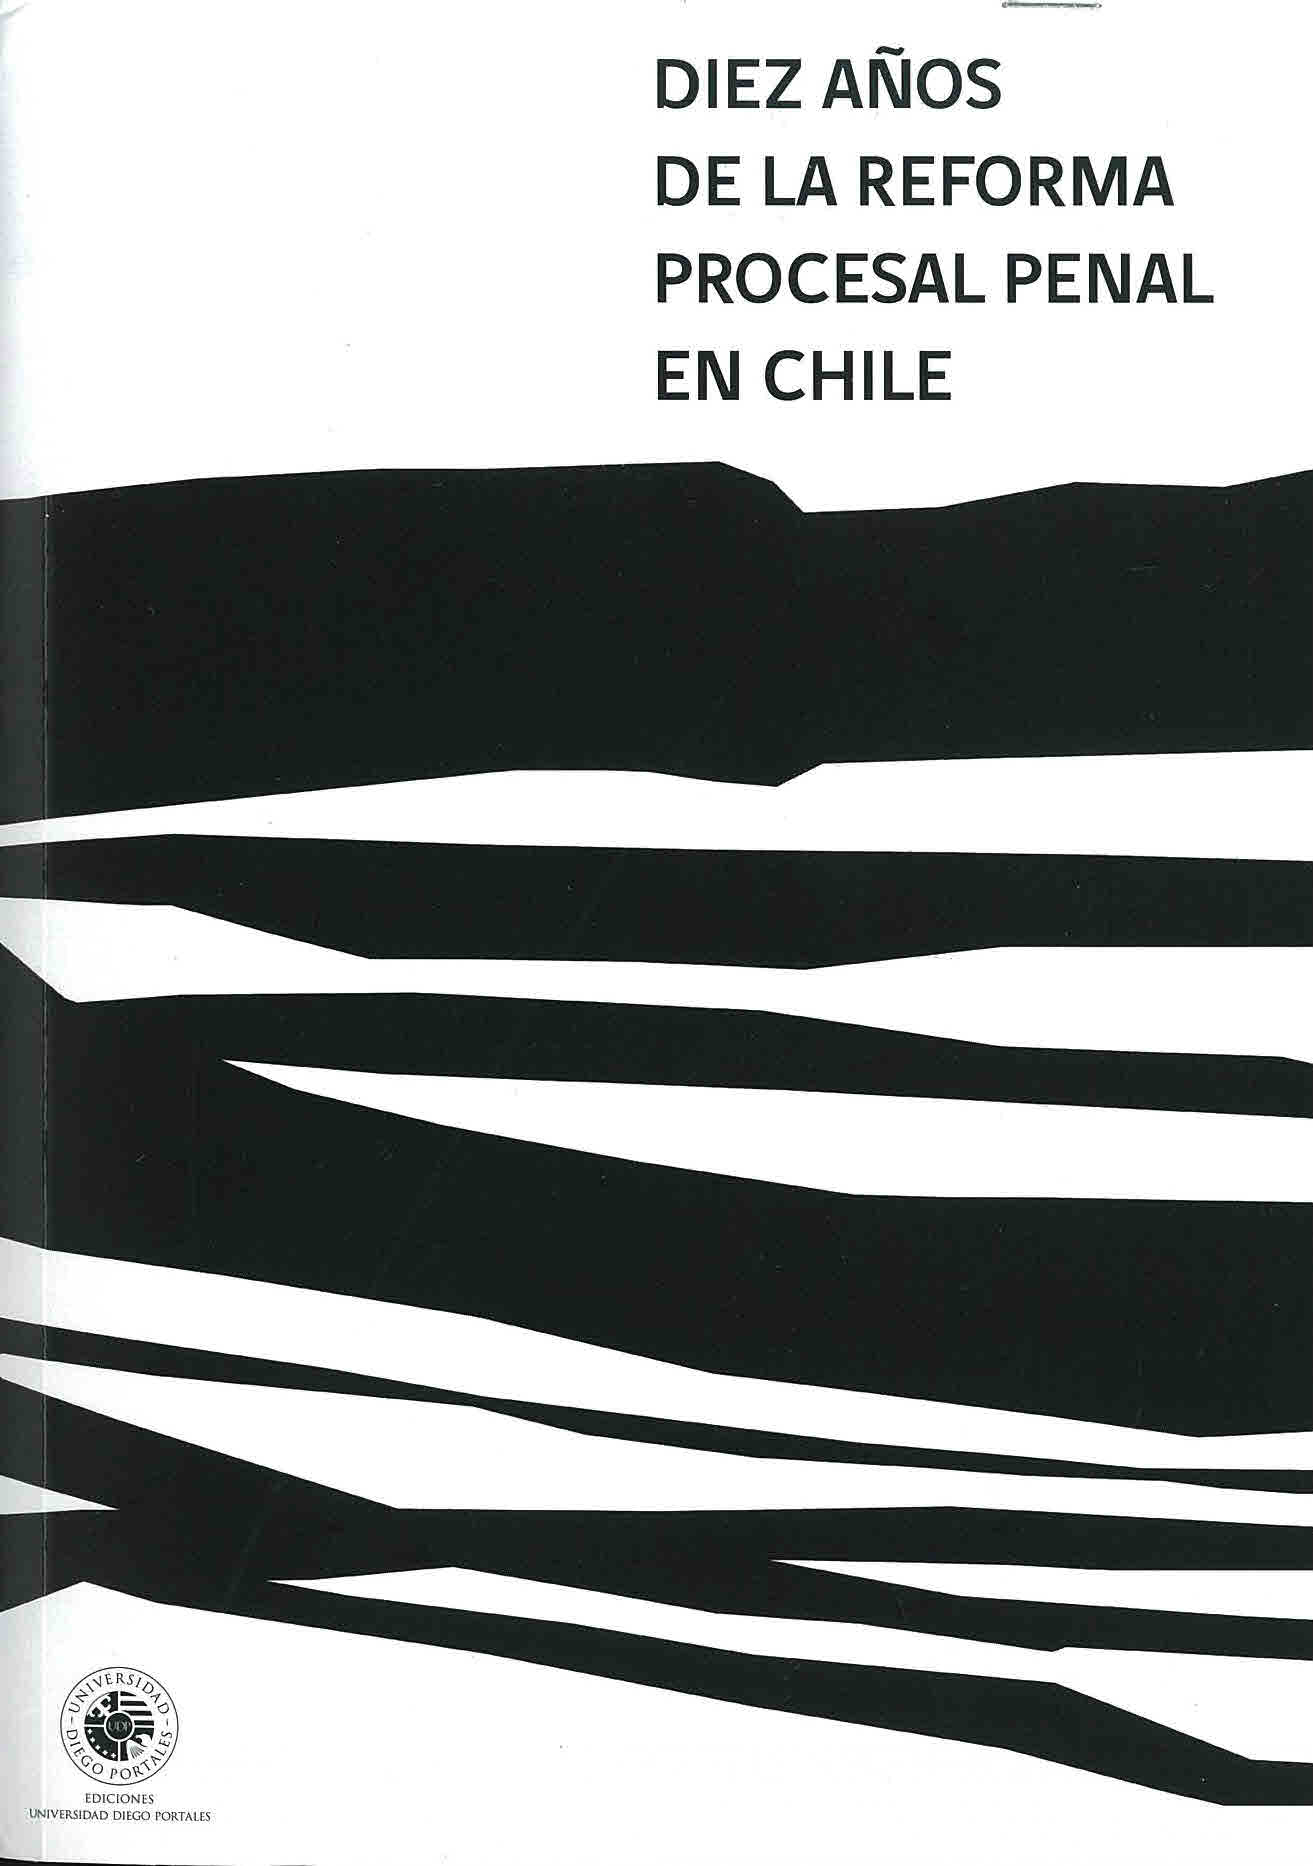 Diez años de la reforma procesal penal en Chile